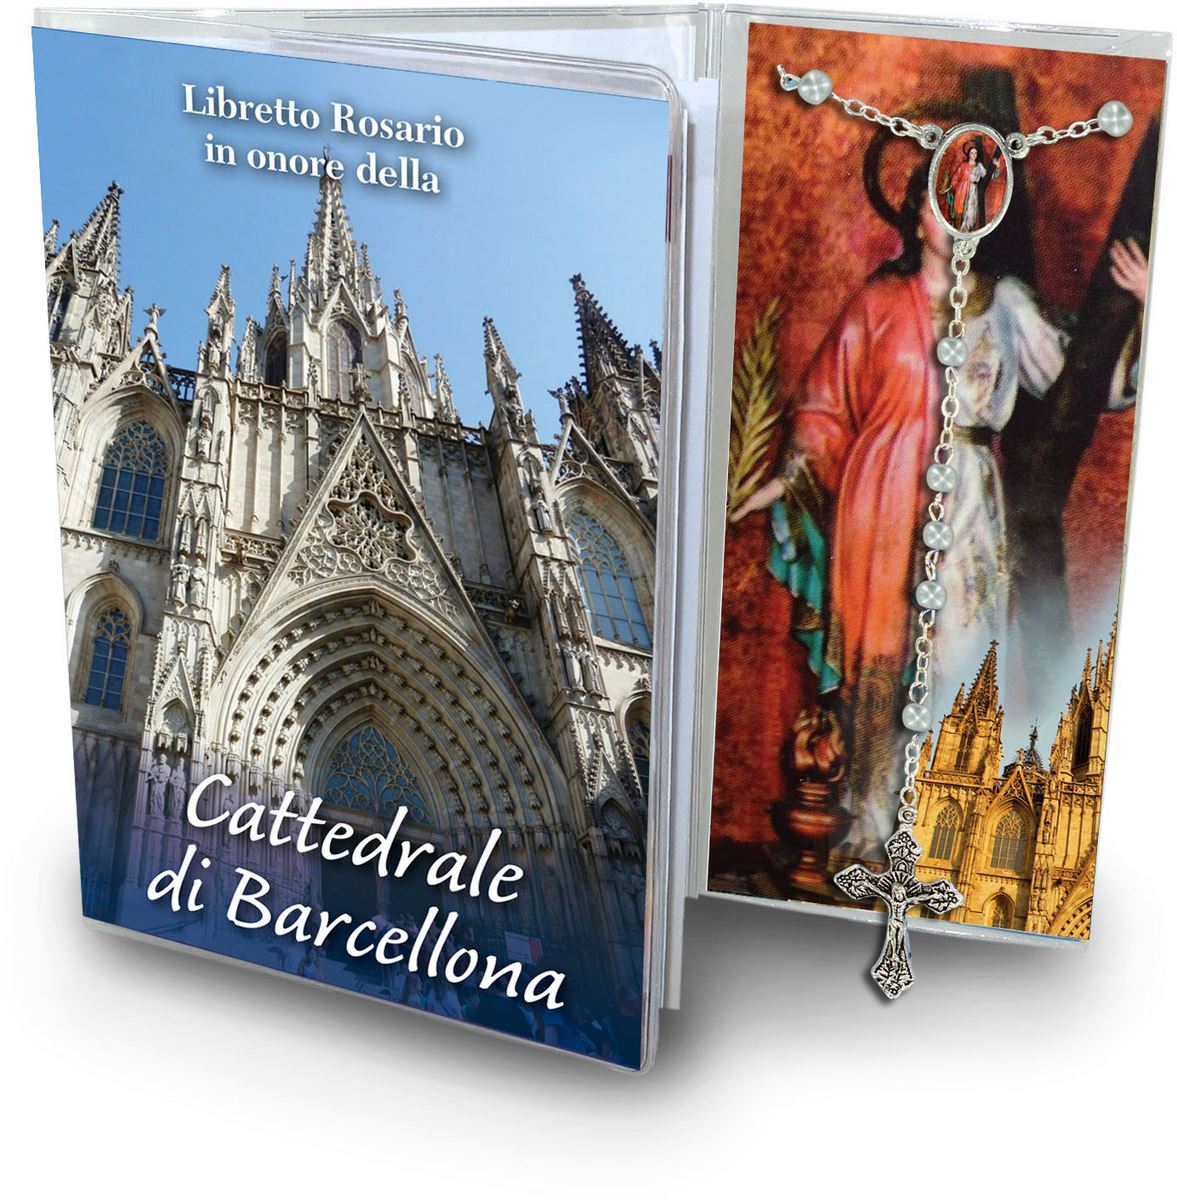 libretto con rosario cattedrale di barcellona - italiano